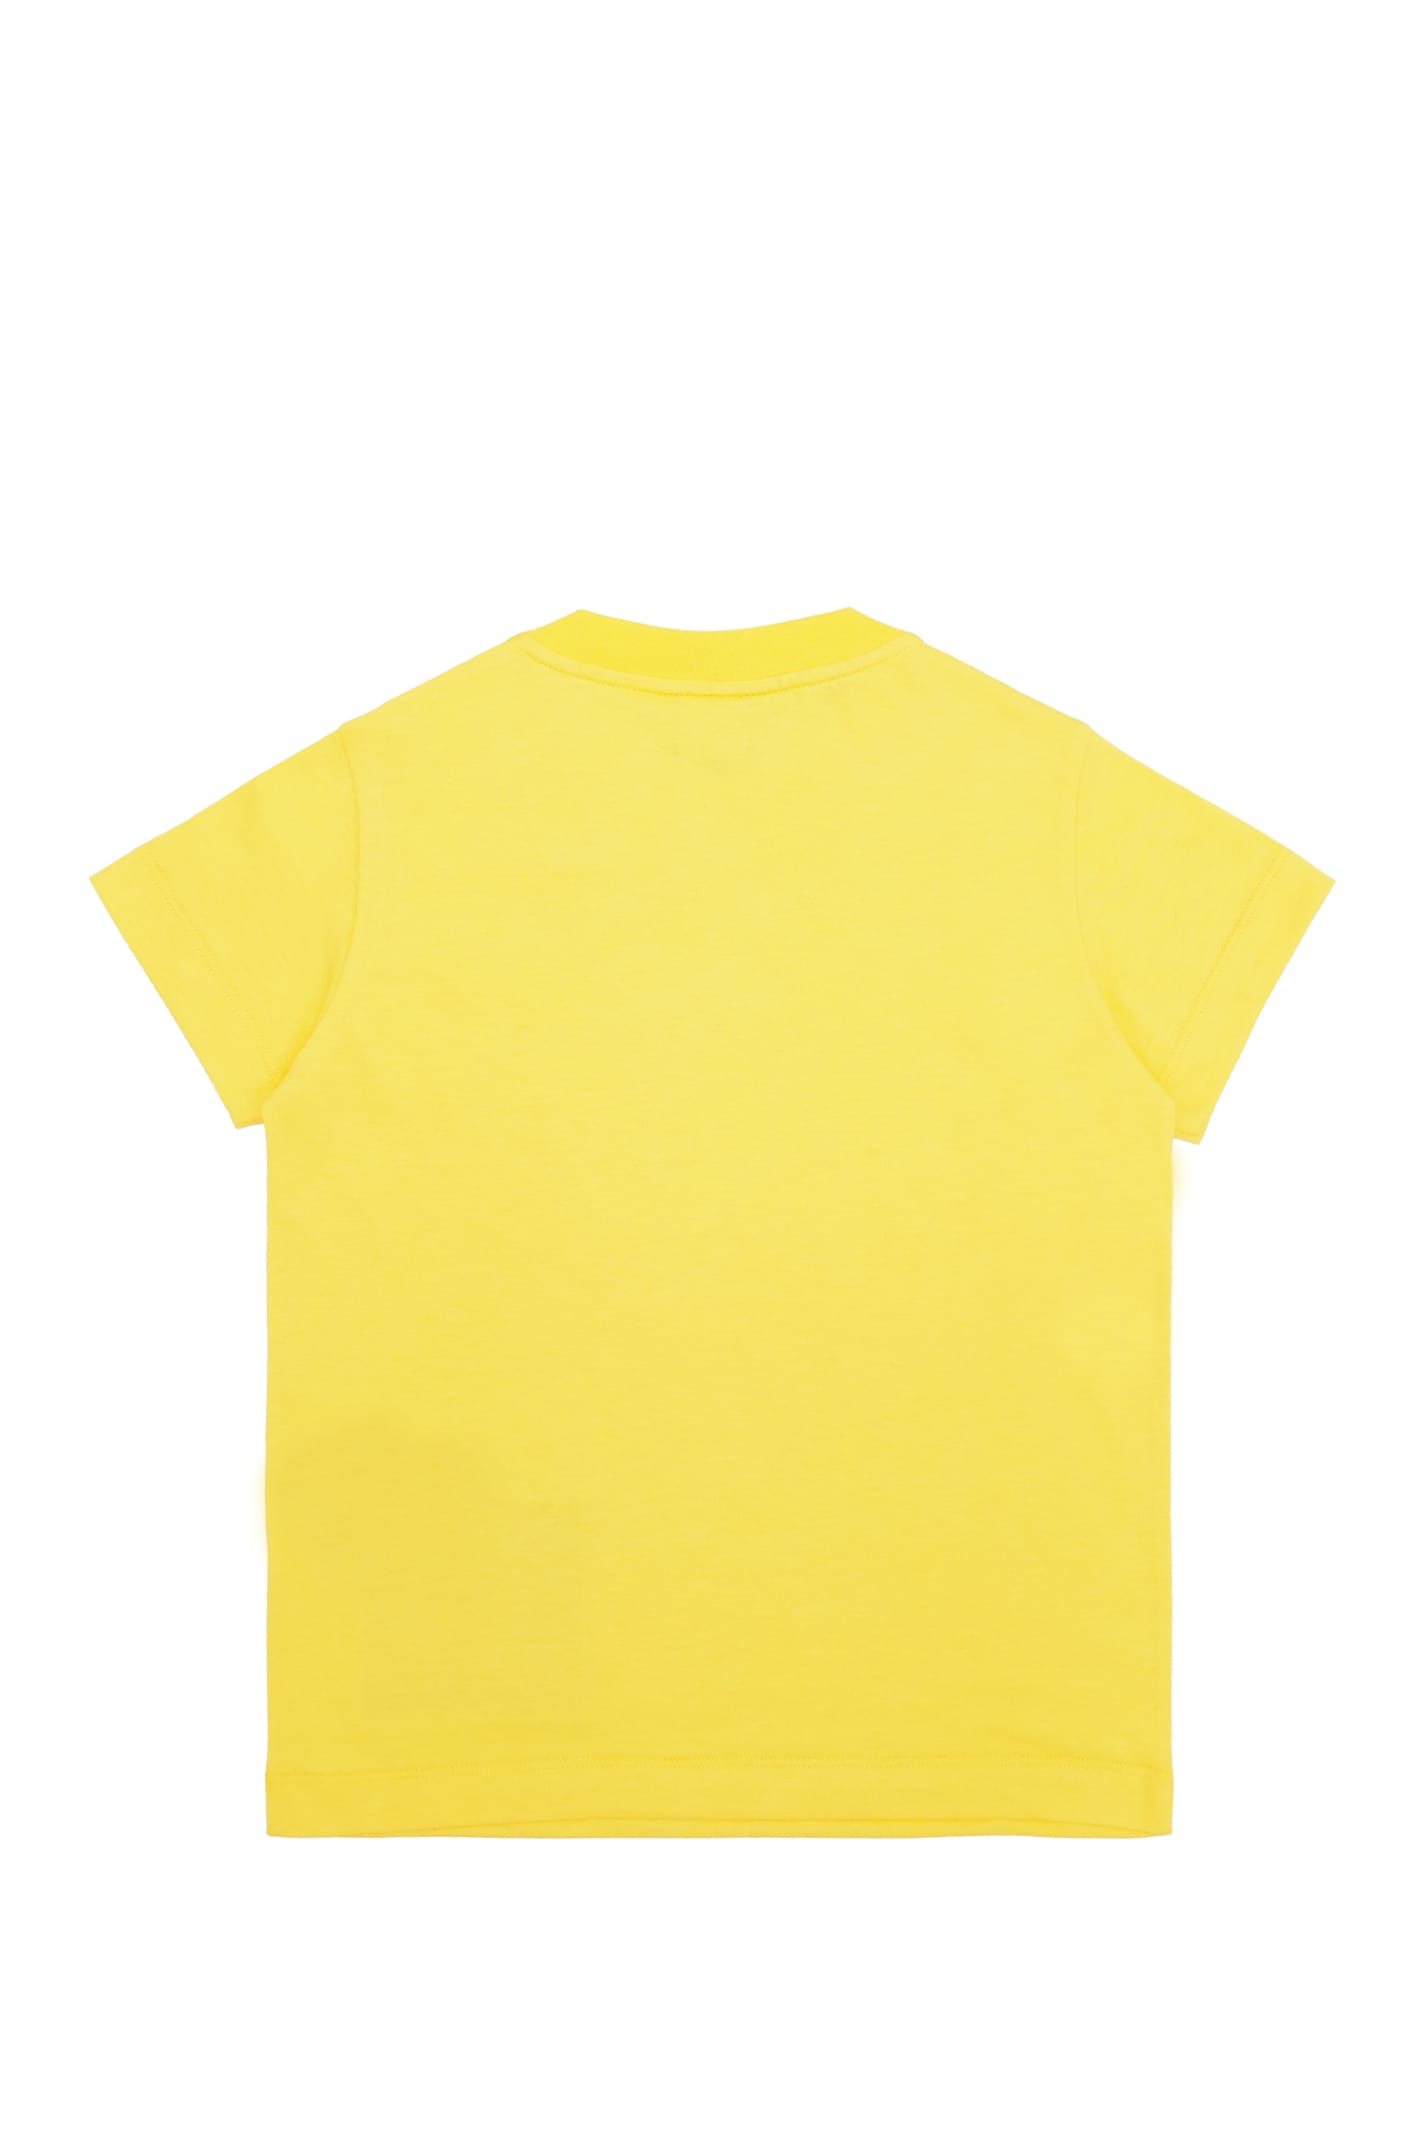 Shop Fendi T-shirt In Yellow